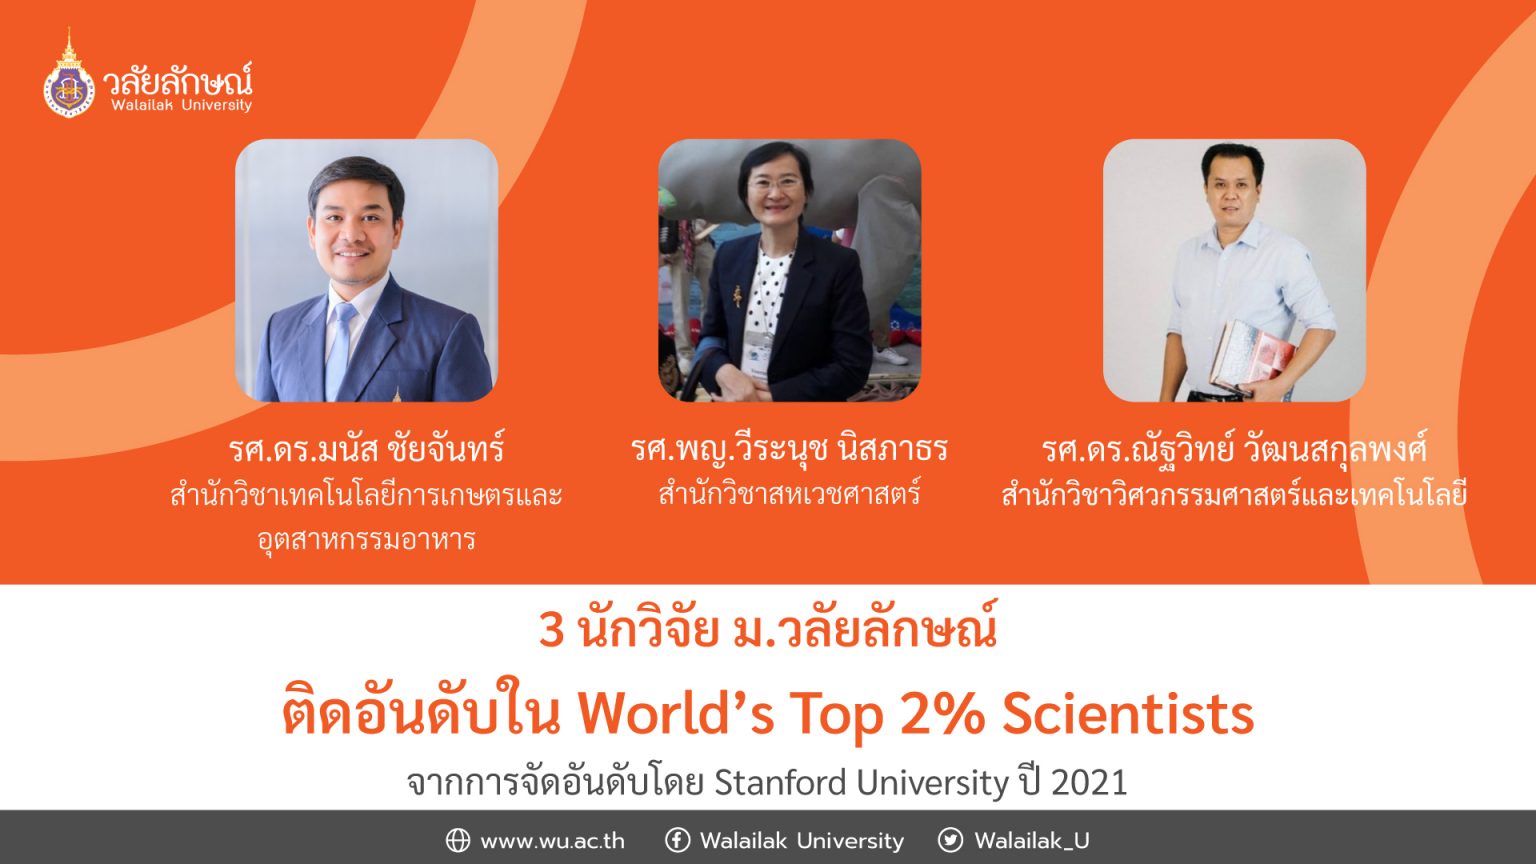 3 นักวิจัย ม.วลัยลักษณ์ ติดอันดับใน World’s Top 2% Scientists